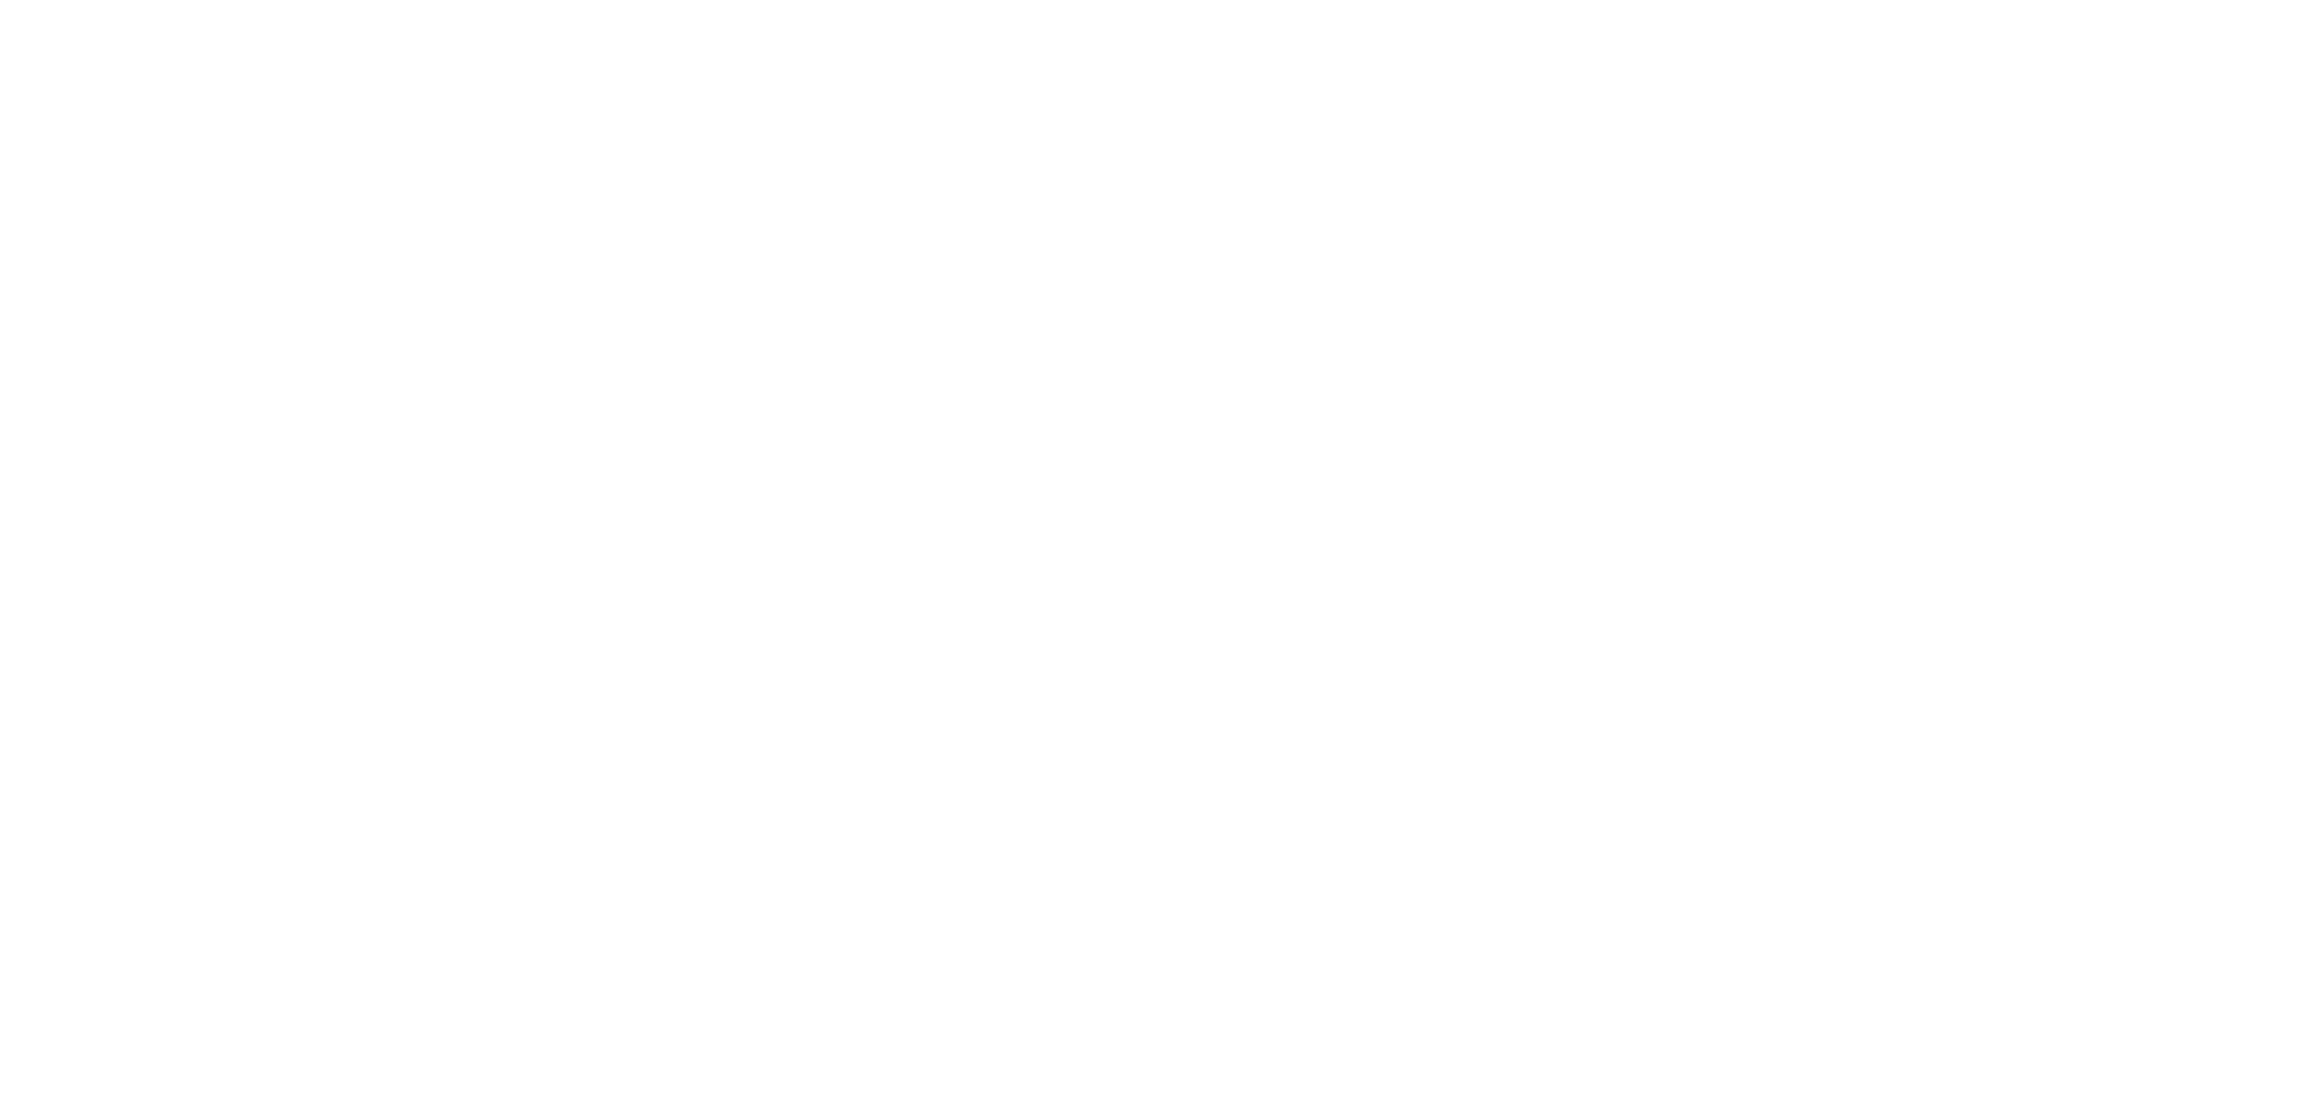 Leashless Brewing - script logo in white